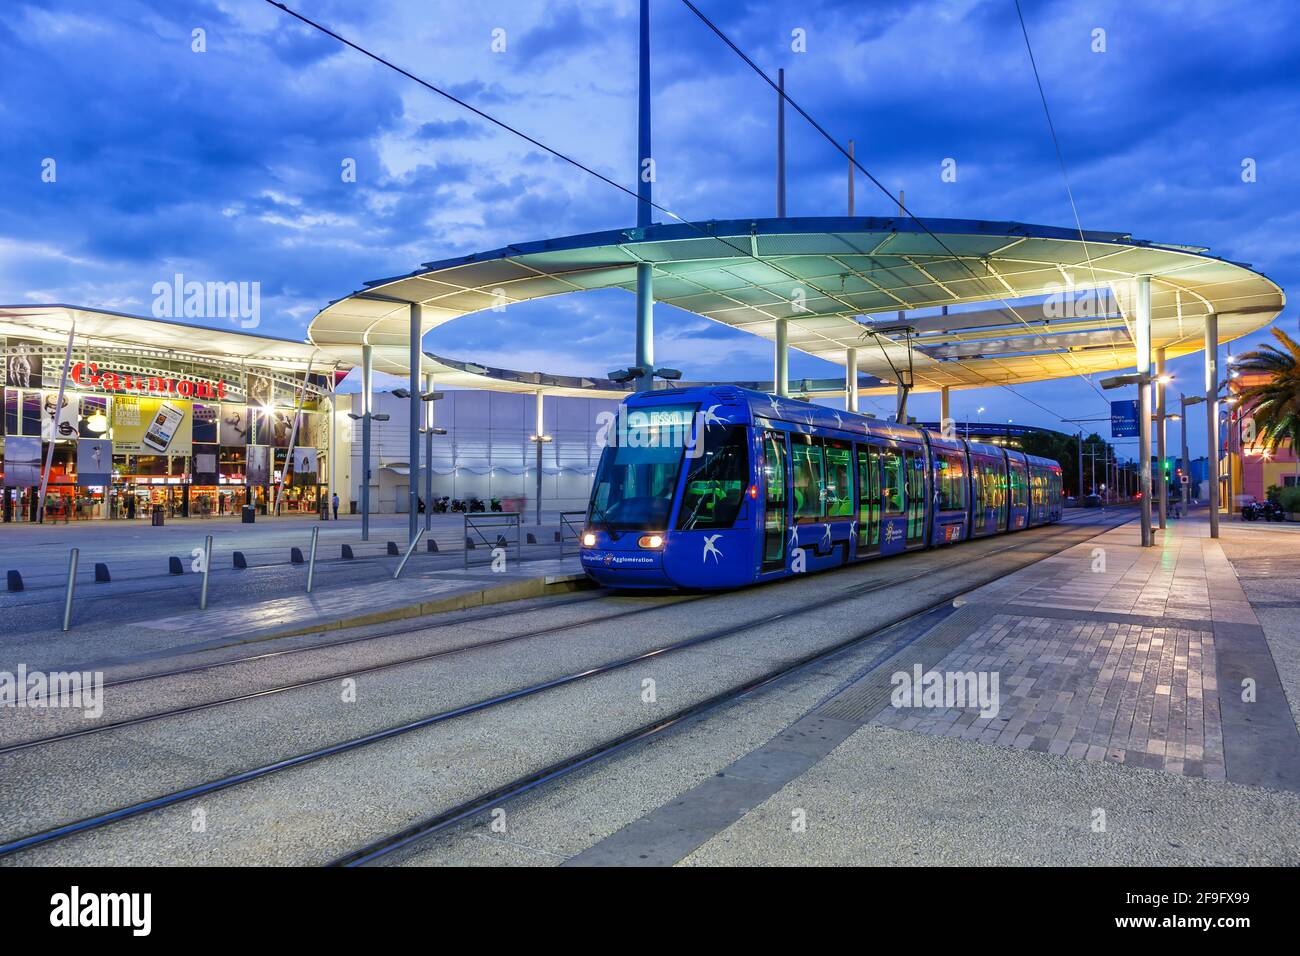 Montpellier, Frankreich - 24. Mai 2015: Tram Tramway de Montpellier öffentliche Verkehrsmittel am Place de France Bahnhof in Montpellier, Fra Stockfoto